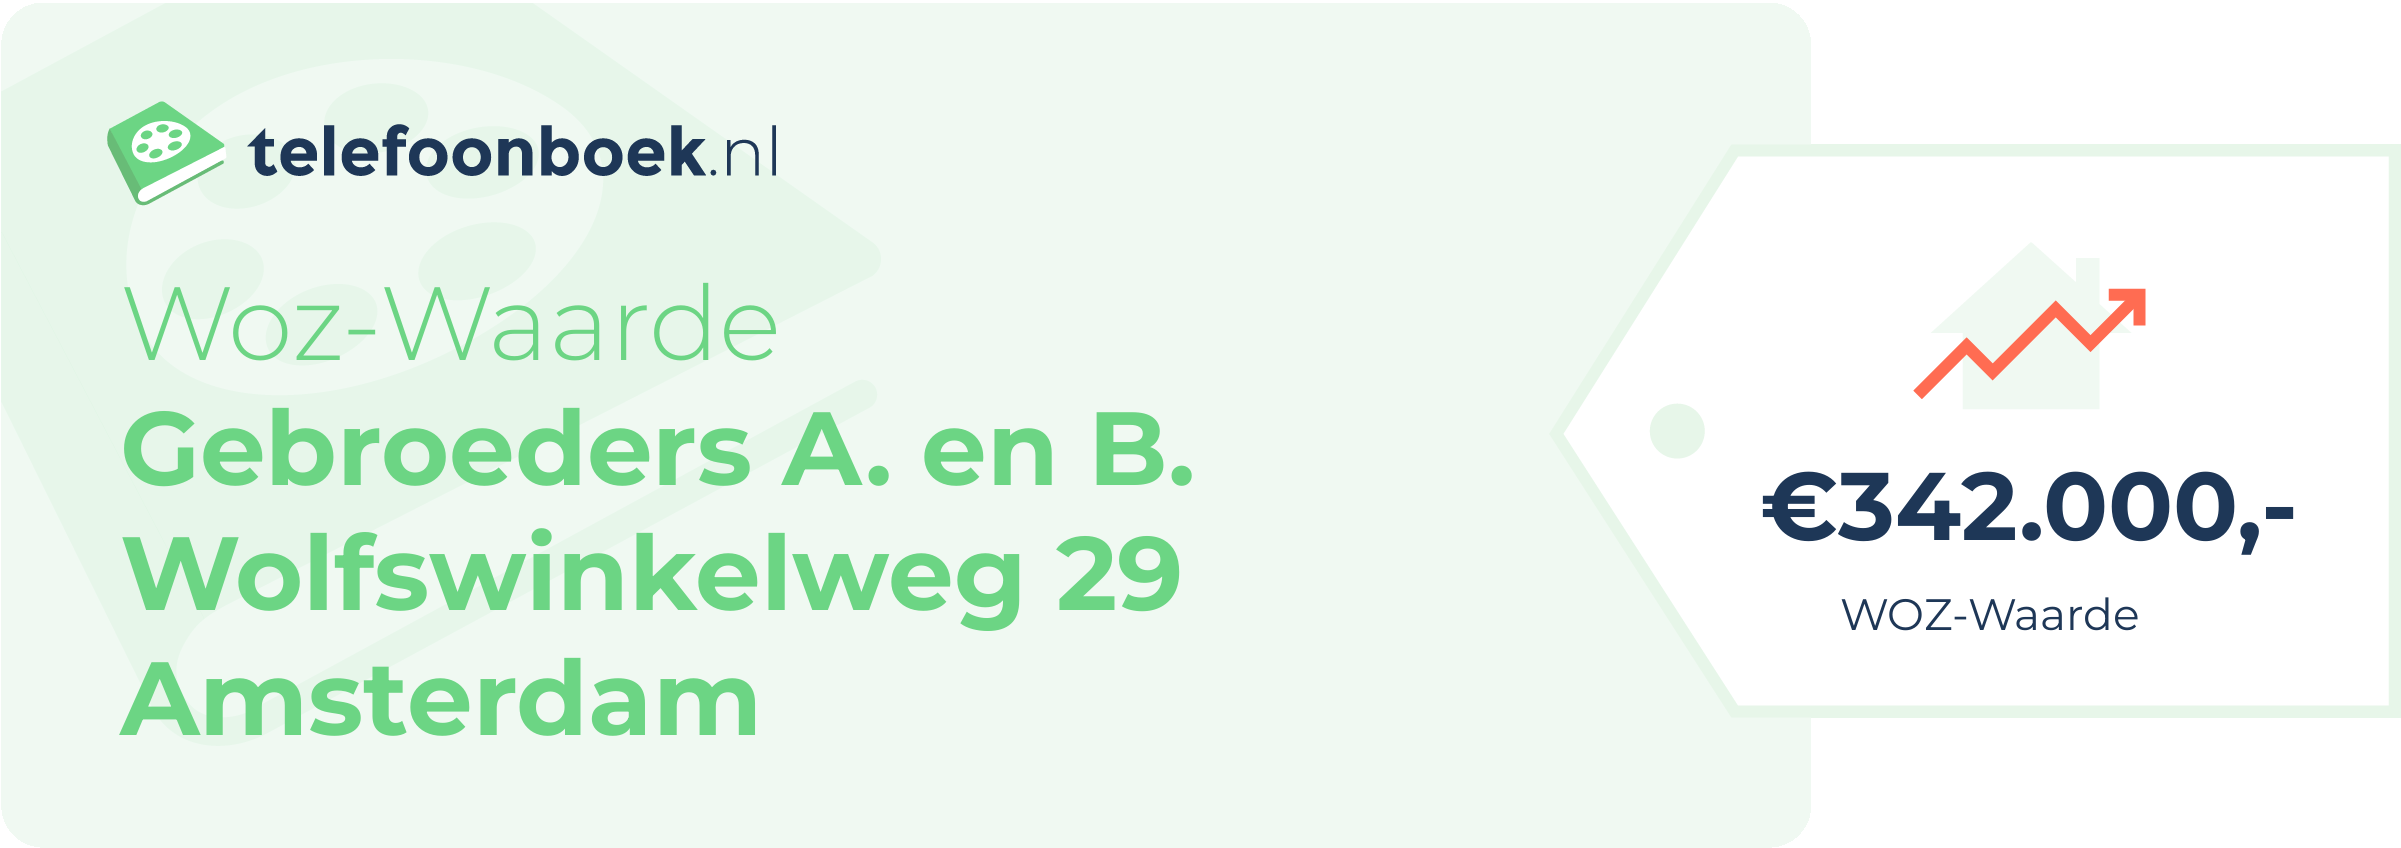 WOZ-waarde Gebroeders A. En B. Wolfswinkelweg 29 Amsterdam